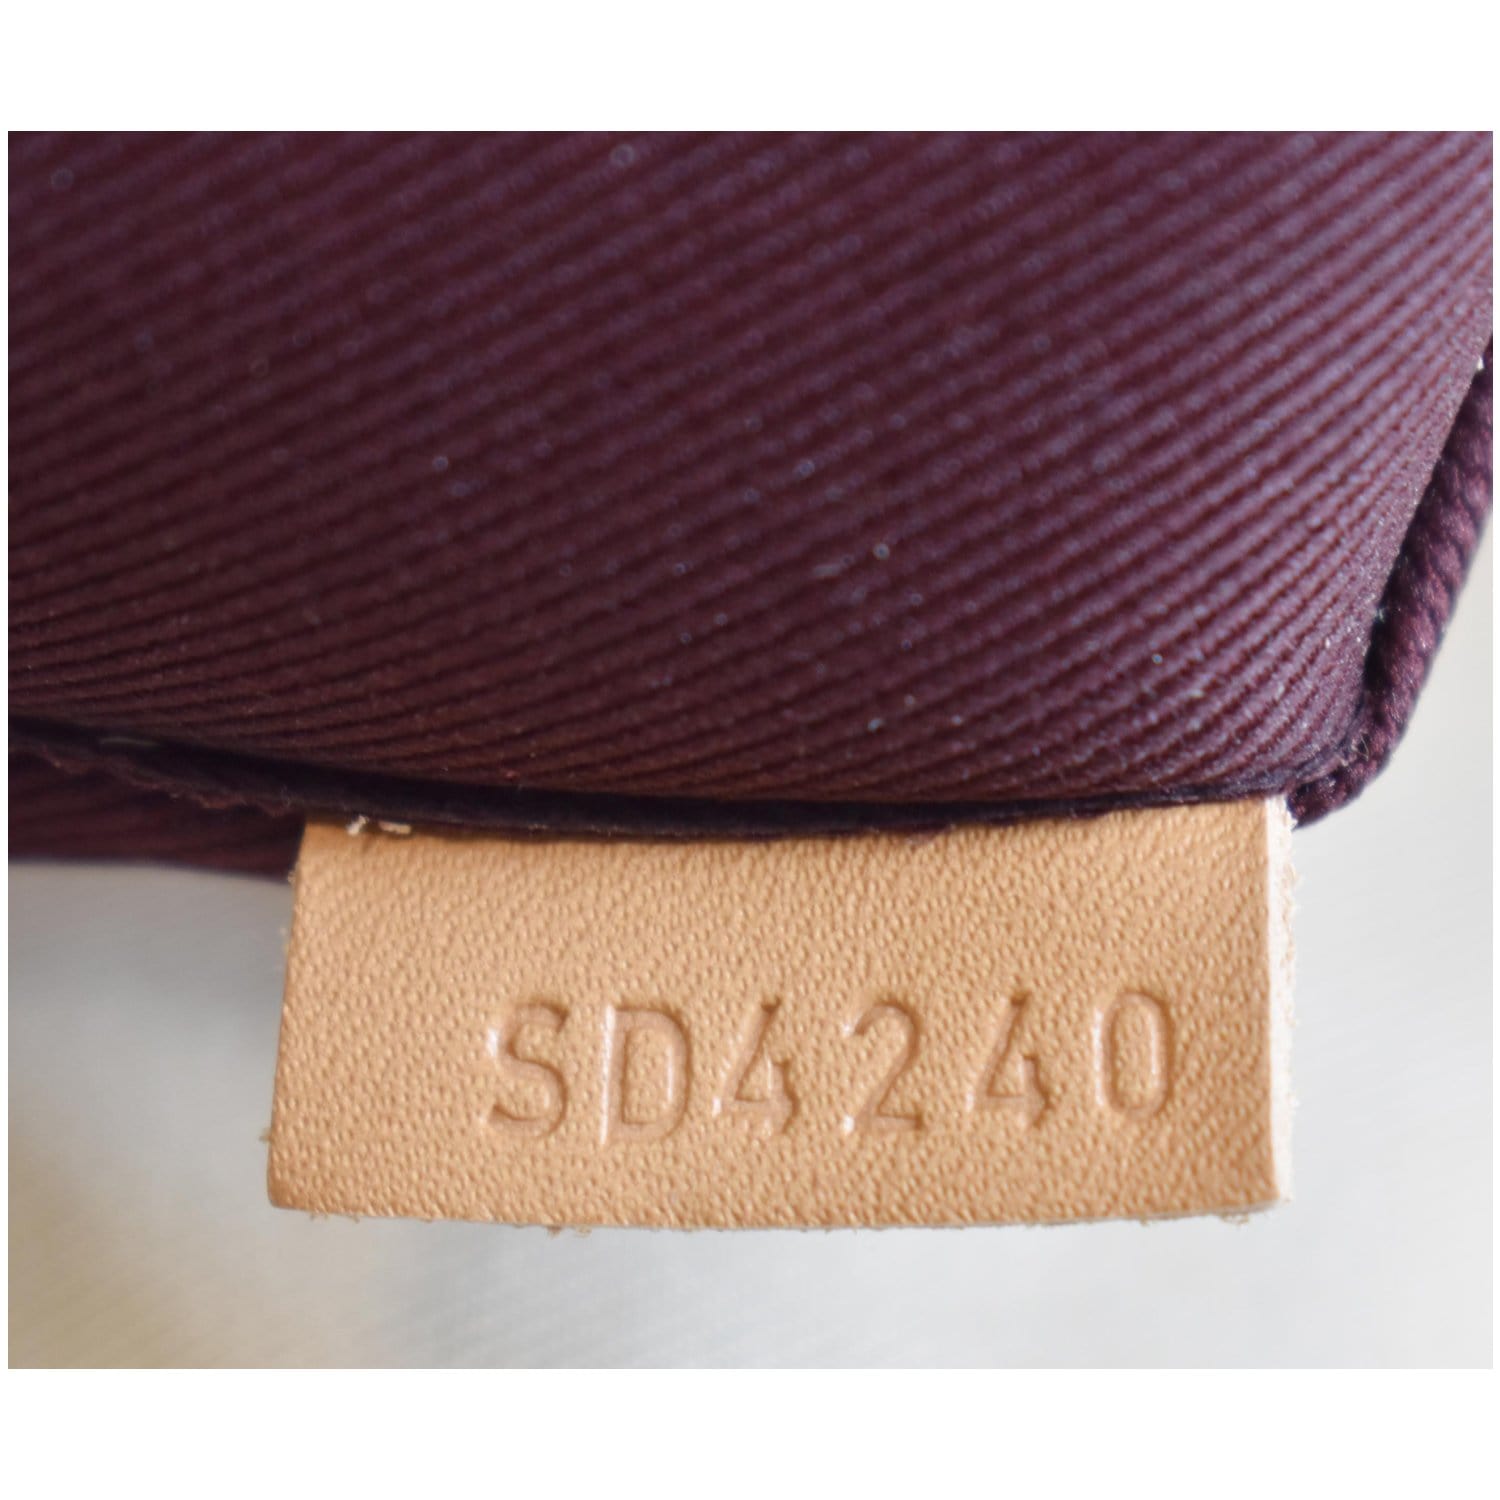 Shop Louis Vuitton Odéon Pm (N50064) by design◇base